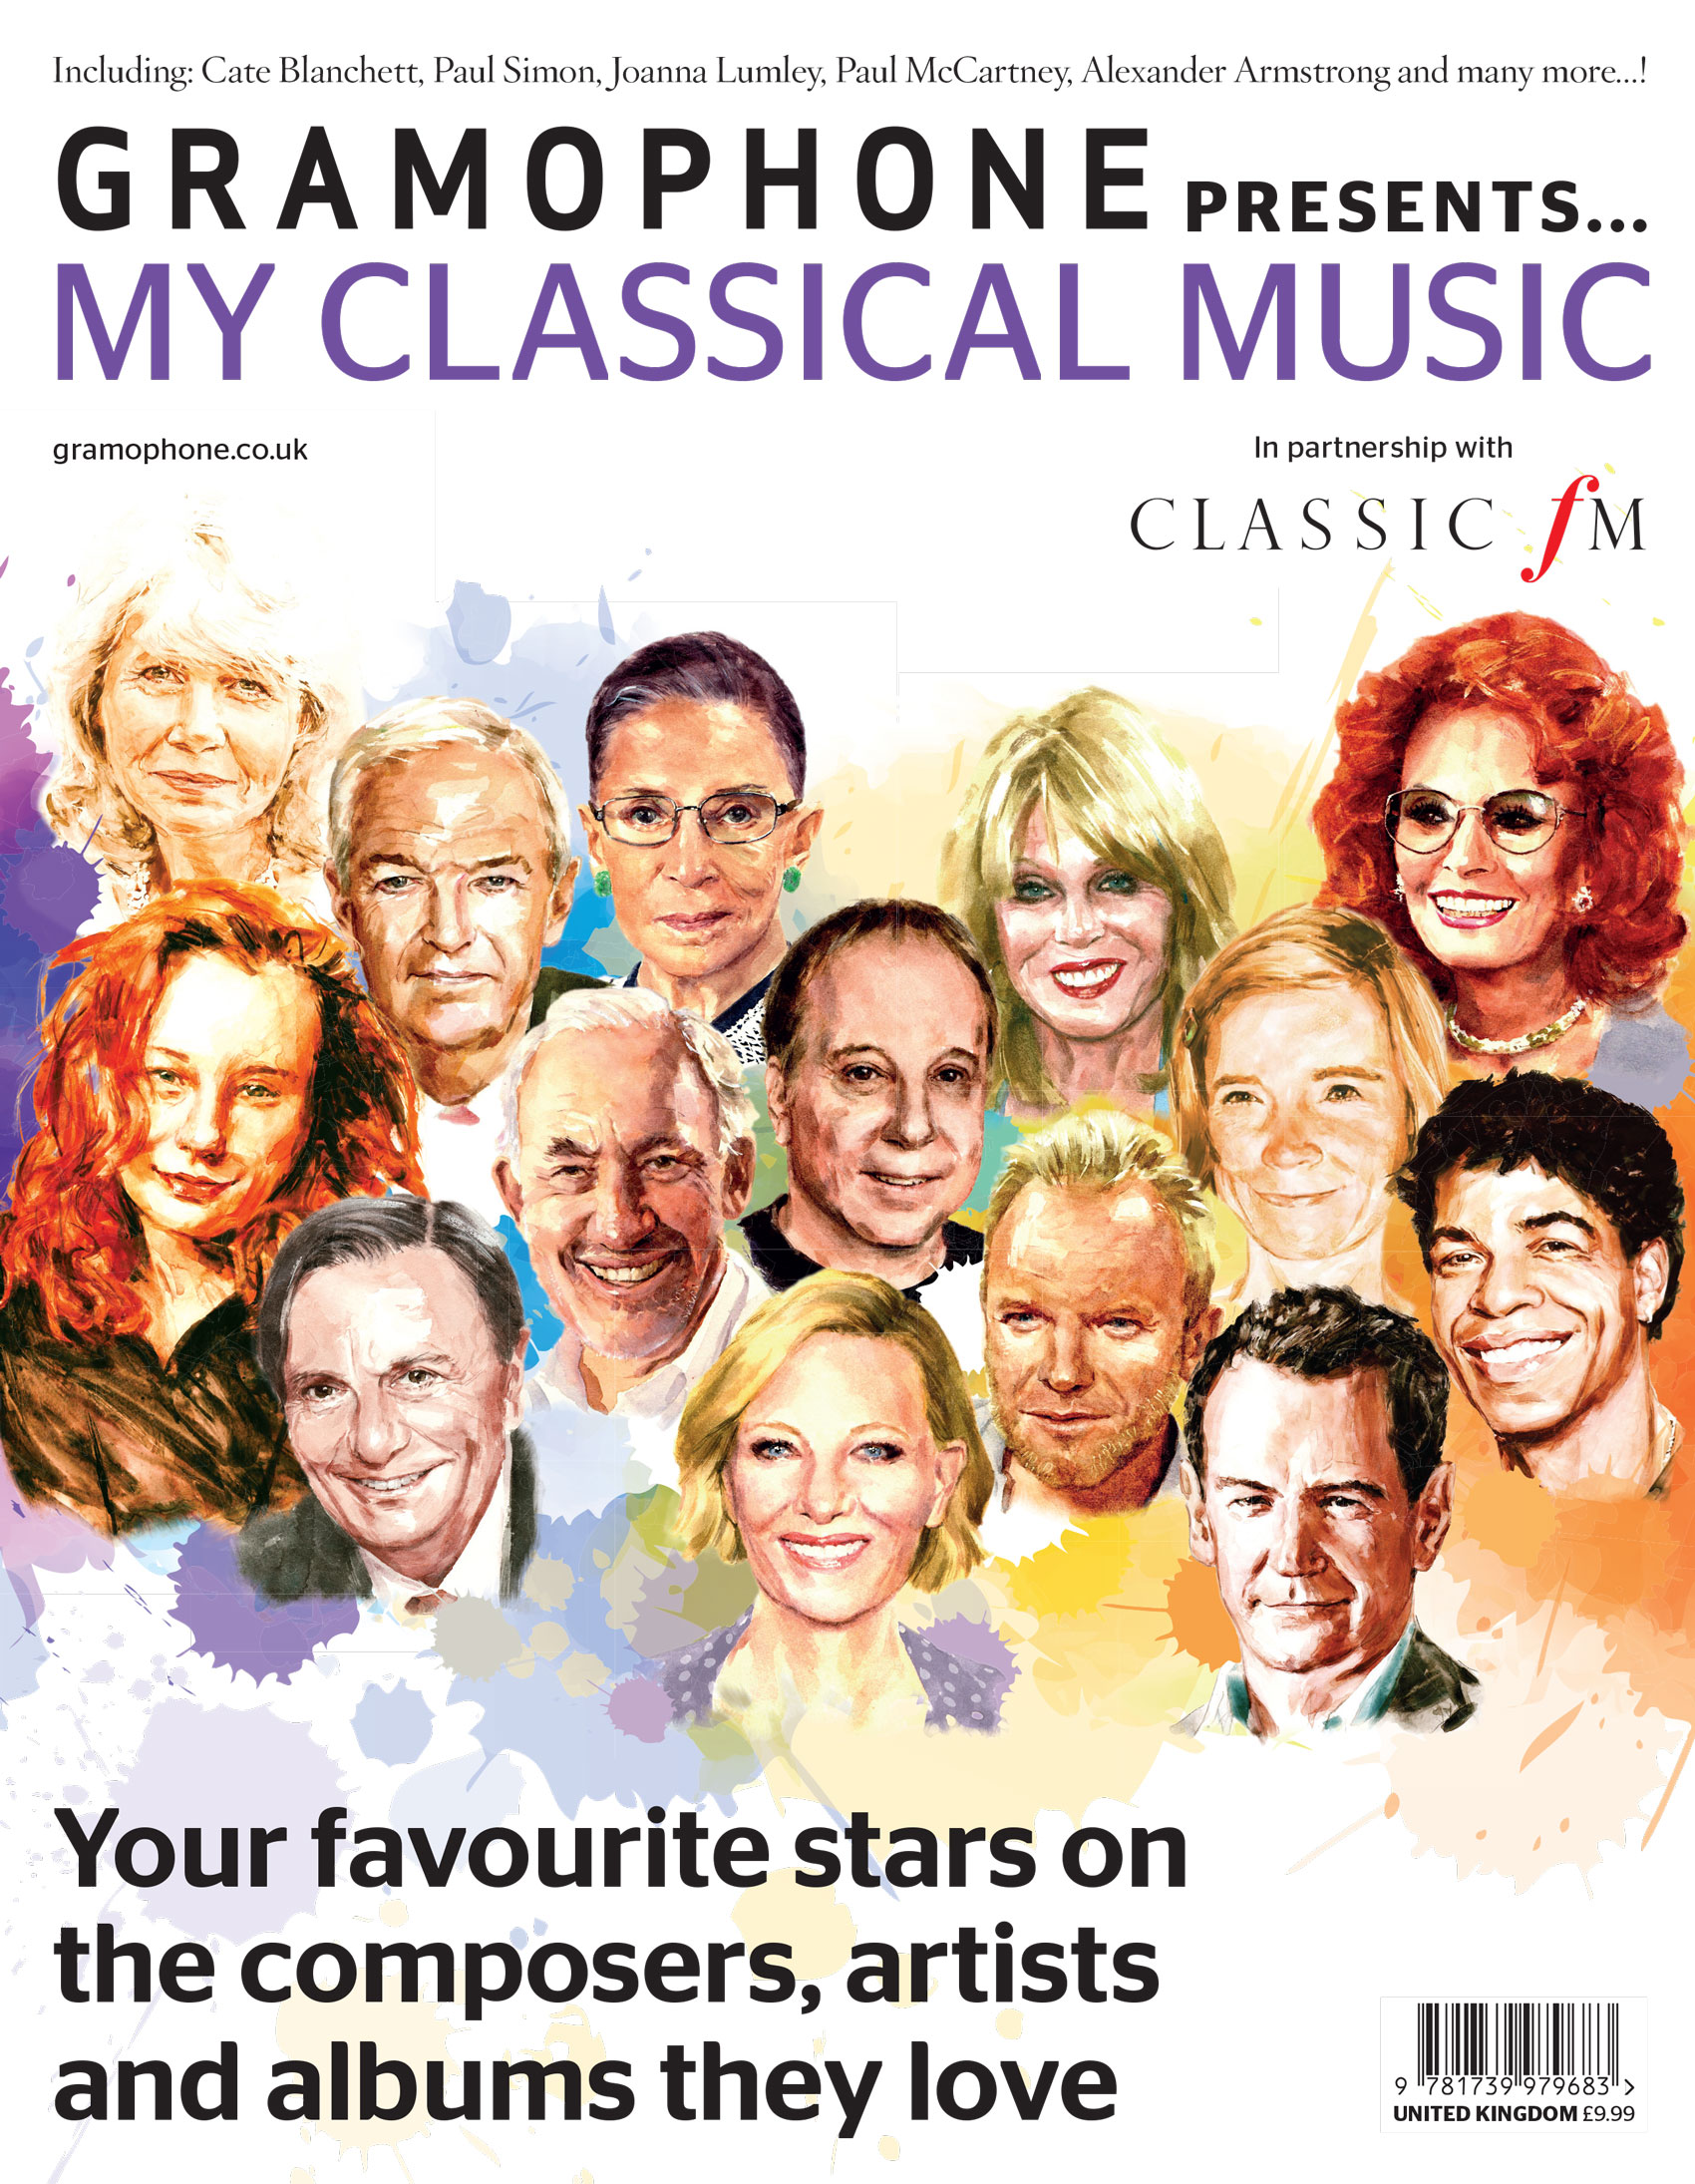 Gramophone – classical music magazine